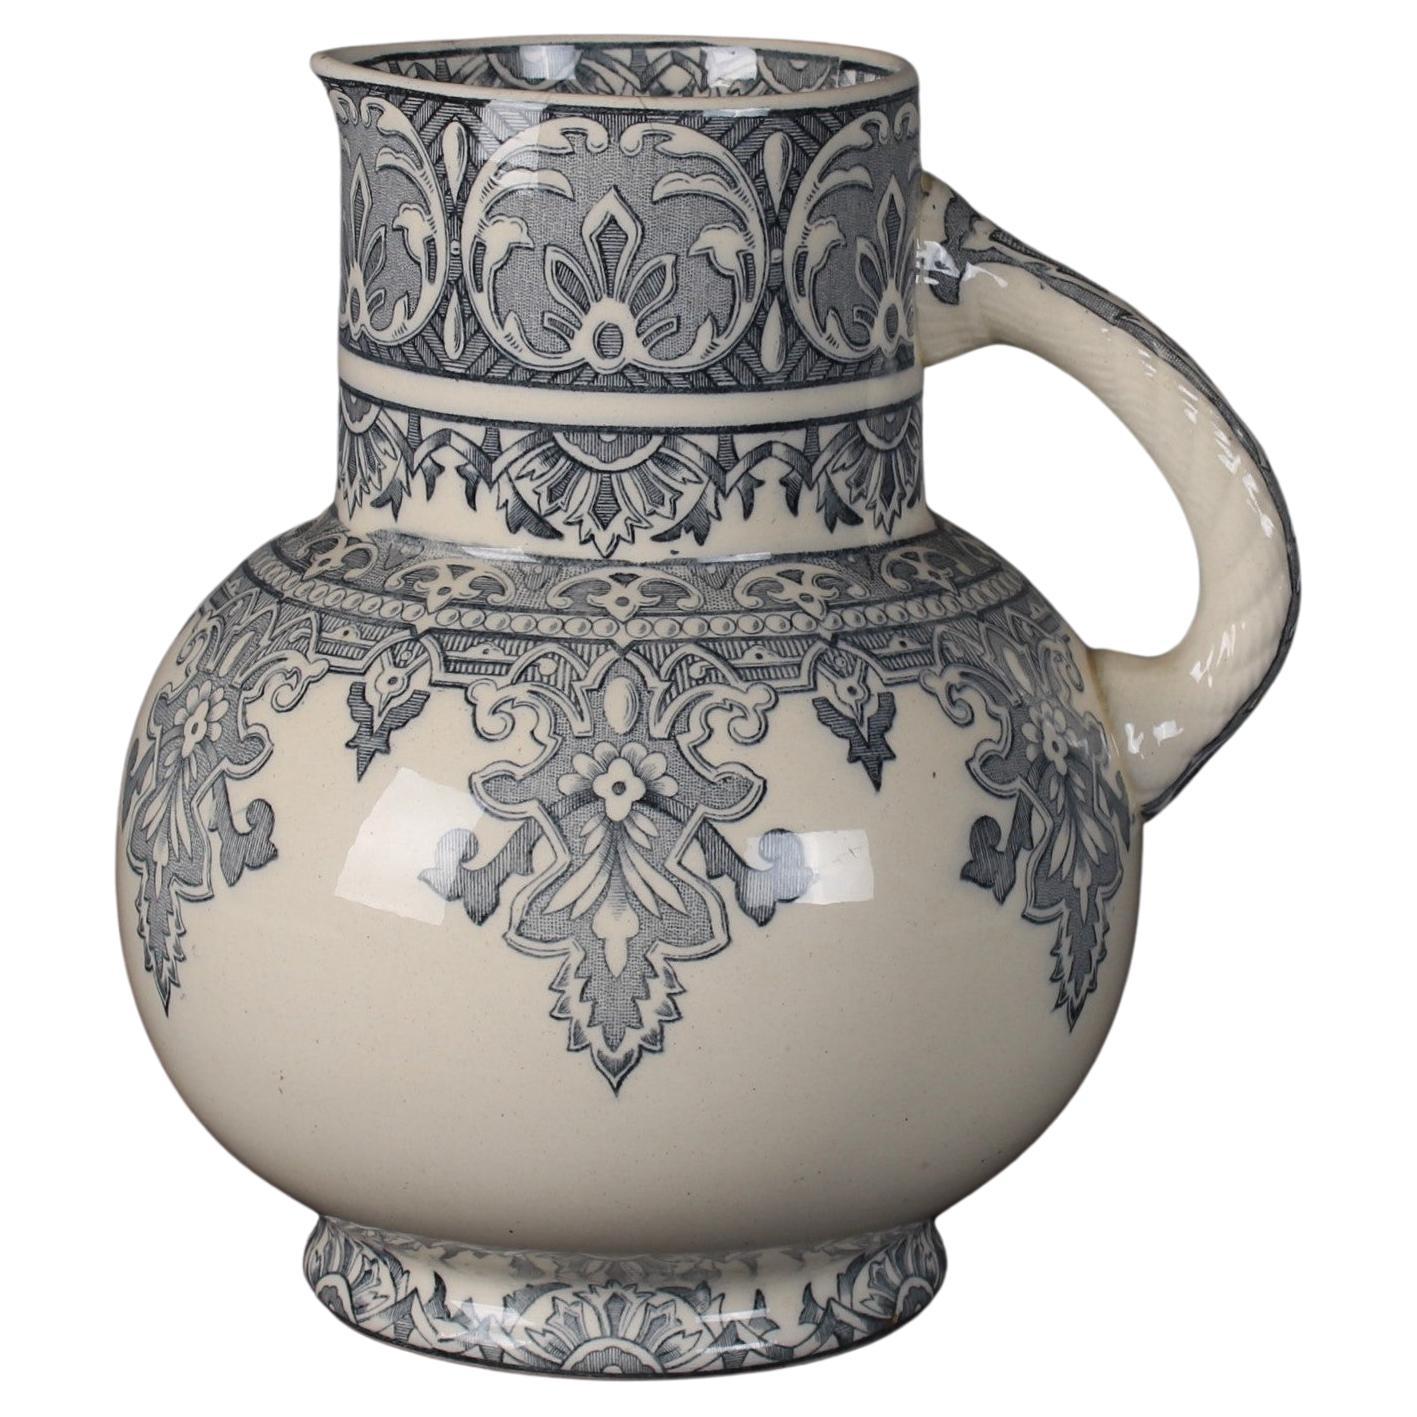 Large French Jug, Moorish Style, Stamped "Mauresque Longchamp", Vase